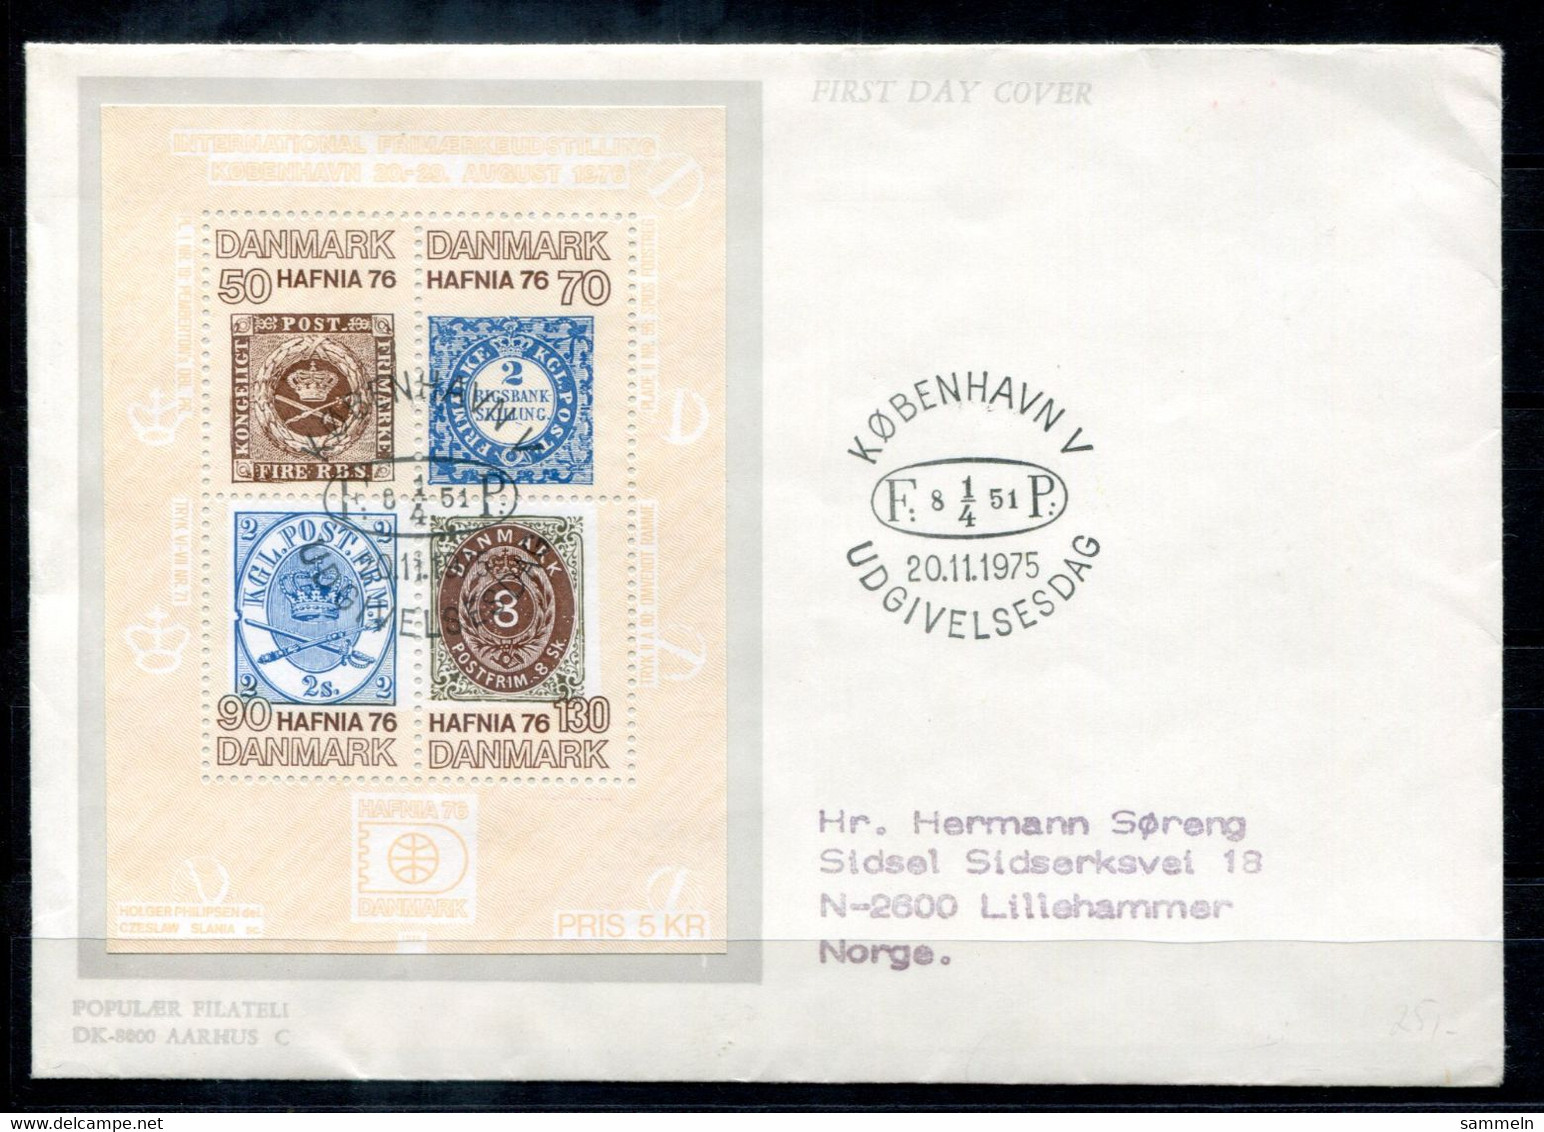 DÄNEMARK Block 2, Bl.2 FDC - HAFNIA '76, Marke Auf Marke, Stamp On Stamp, Timbre Sur Timbre - DENMARK / DANEMARK - Blocks & Kleinbögen